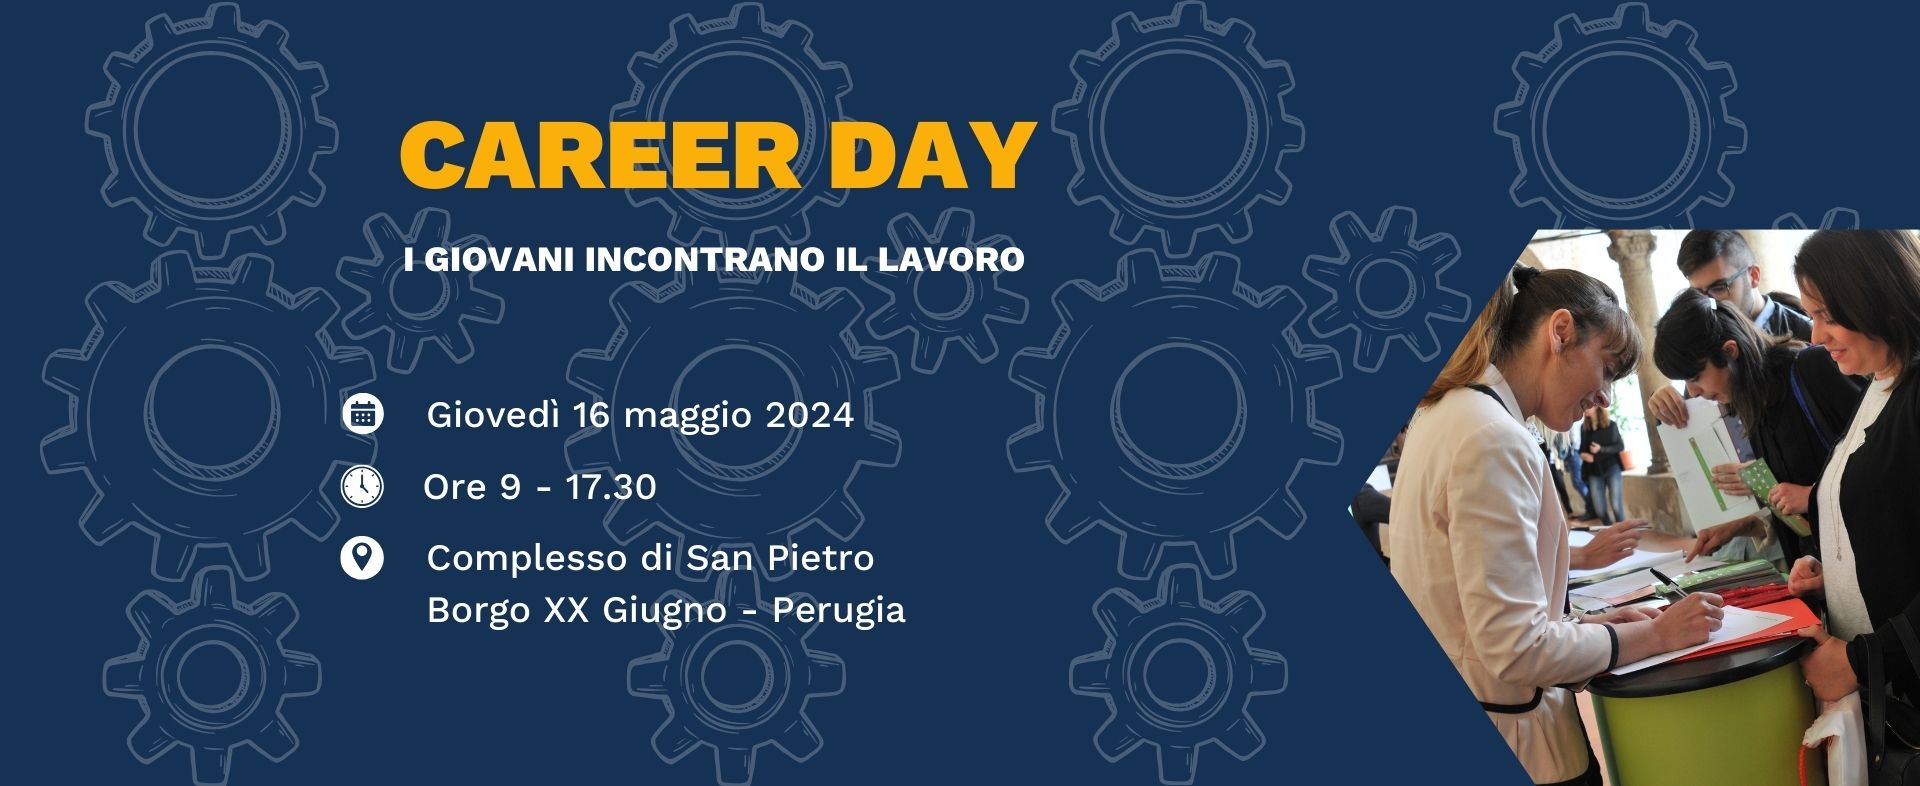 Career Day - I giovani incontrano il lavoro - 16 maggio 2024 - Complesso di S. Pietro, Borgo XX Giugno - Perugia